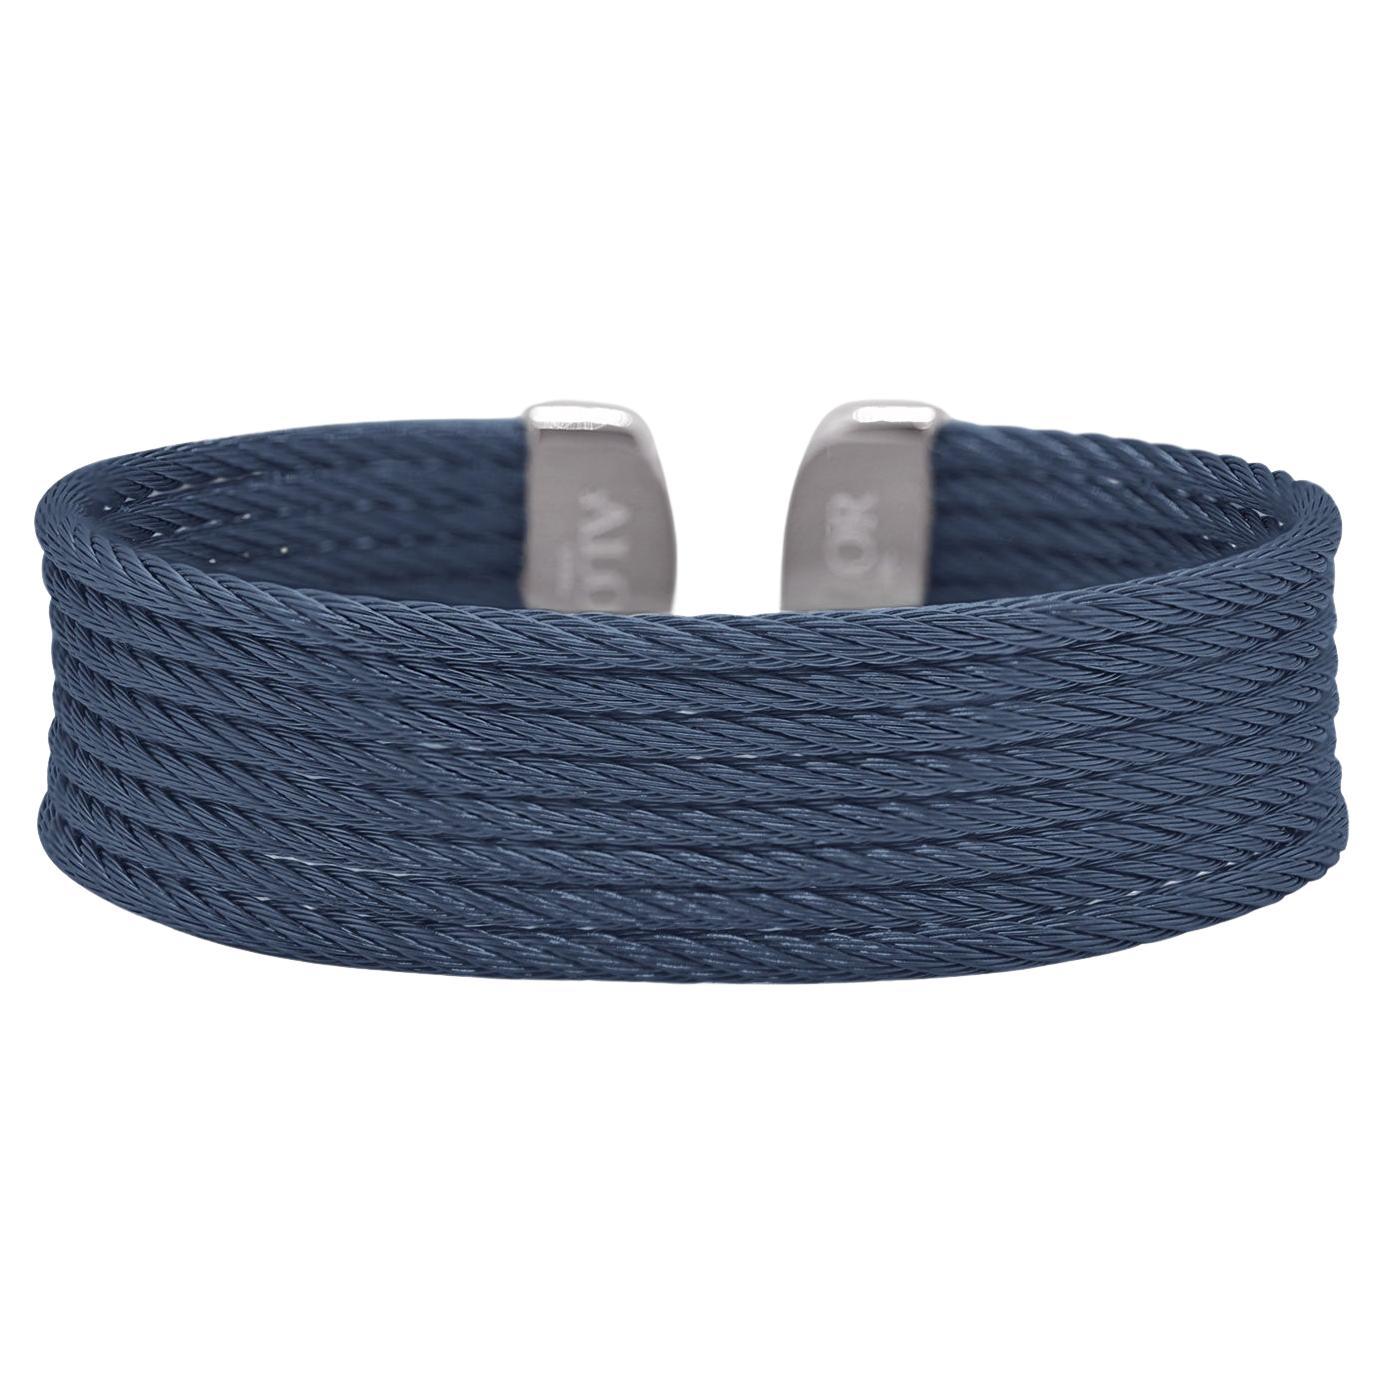 Alor Blauberry Cable Cuff Essentials 8-reihige Manschette 04-28-B608-00 im Angebot